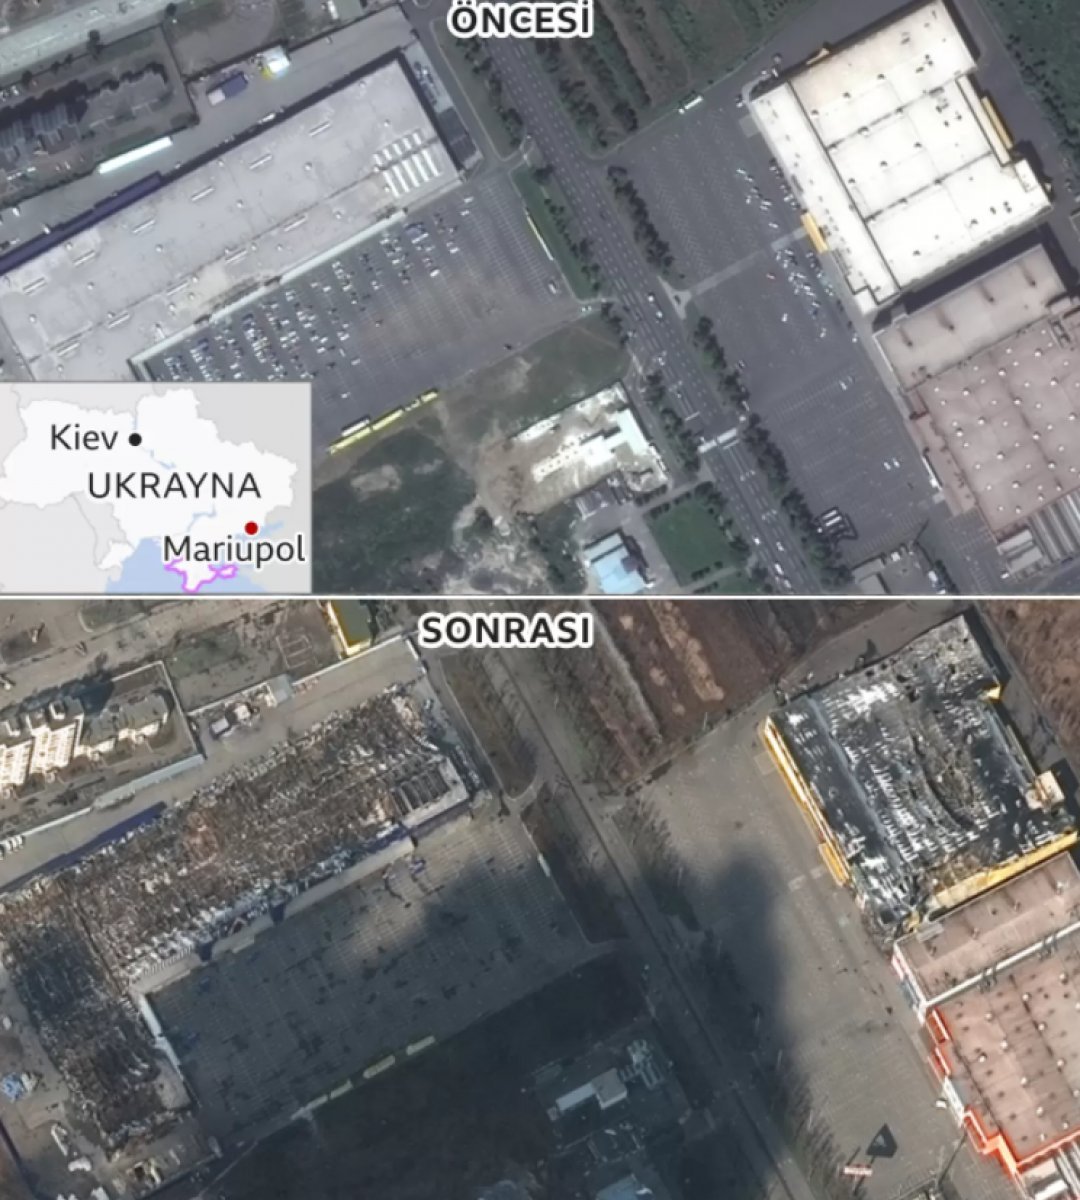 Mariupol de yıkımın boyutuna ait kareler #3